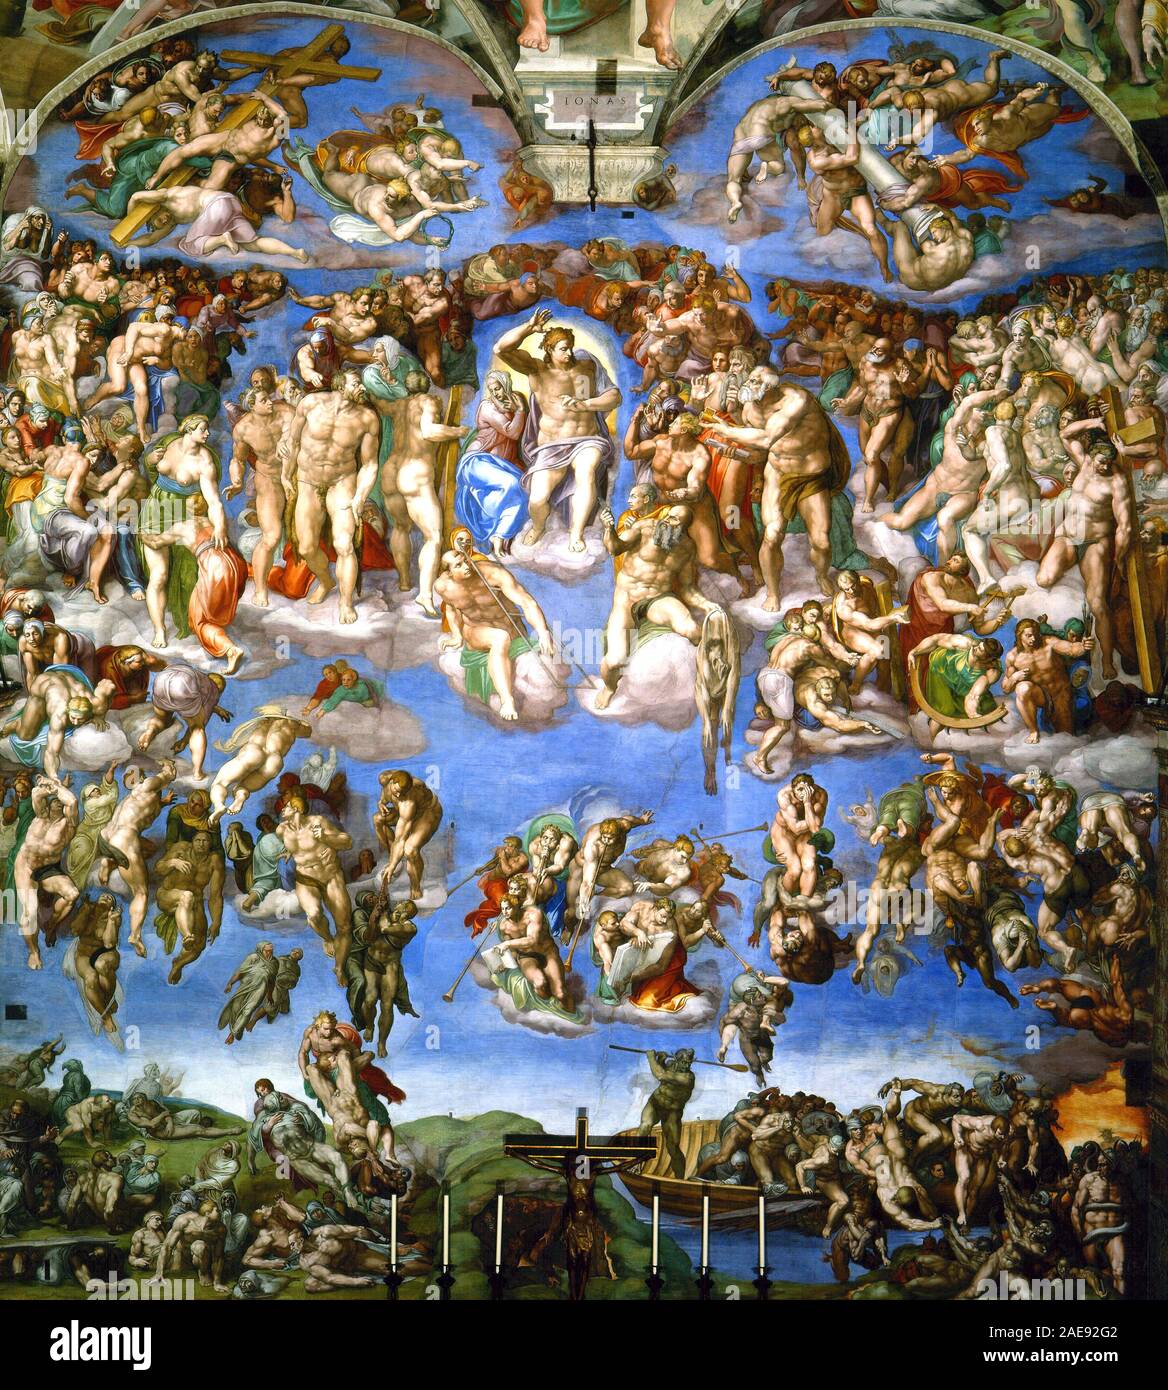 Das Jüngste Gericht von Michelangelo, ein Fresko von der italienischen Renaissance Maler Michelangelo, die den gesamten Altar Wand der Sixtinischen Kapelle im Vatikan. Es ist eine Darstellung des Zweiten Kommens Christi und der endgültigen und ewigen Gericht von Gott der ganzen Menschheit. Stockfoto